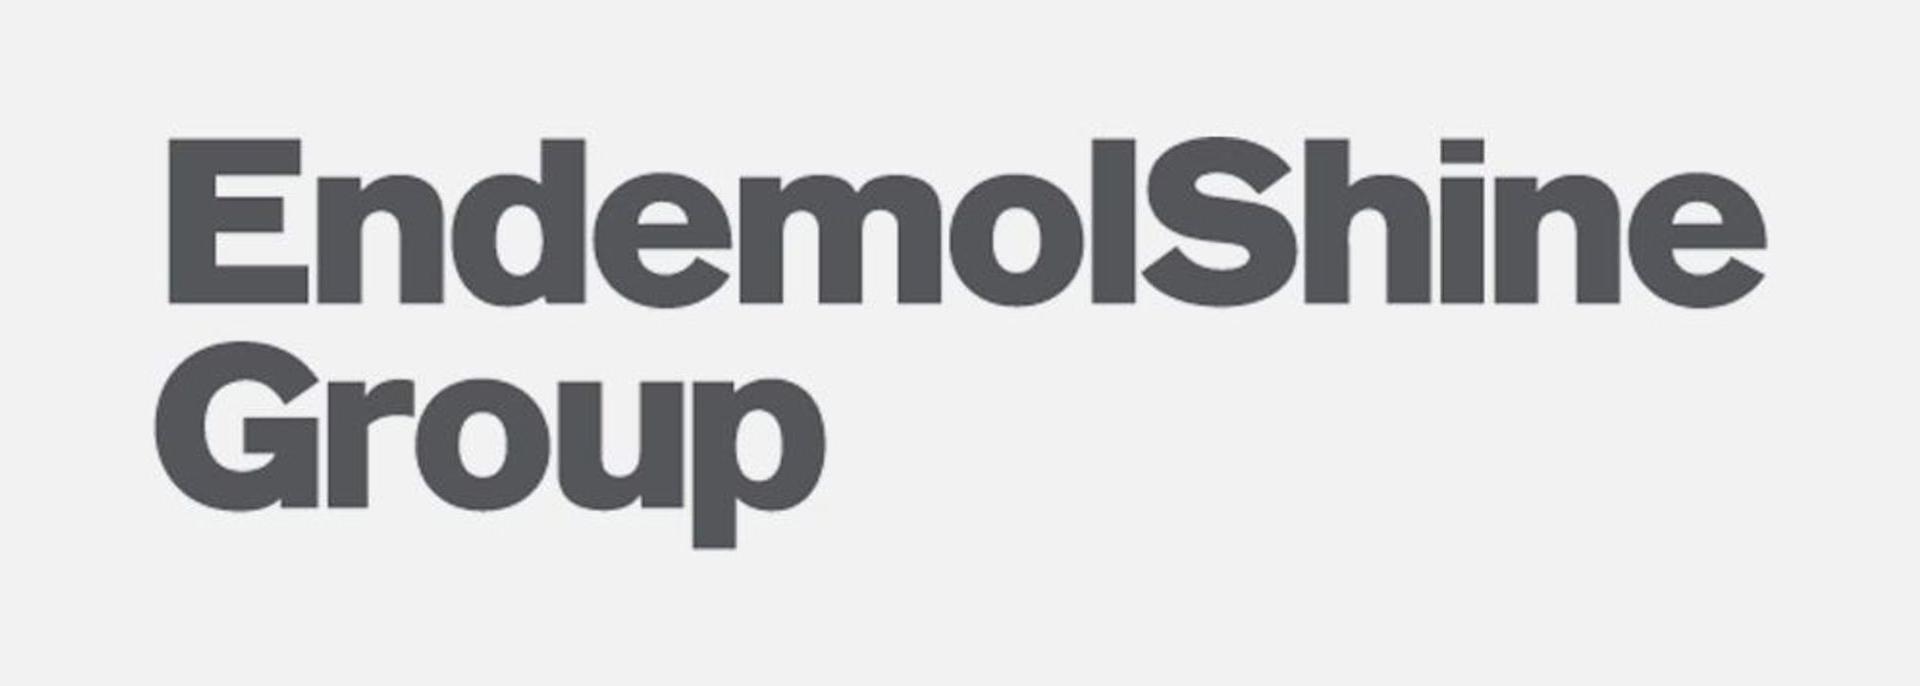 Endemol Logo - Endemol Shine Group